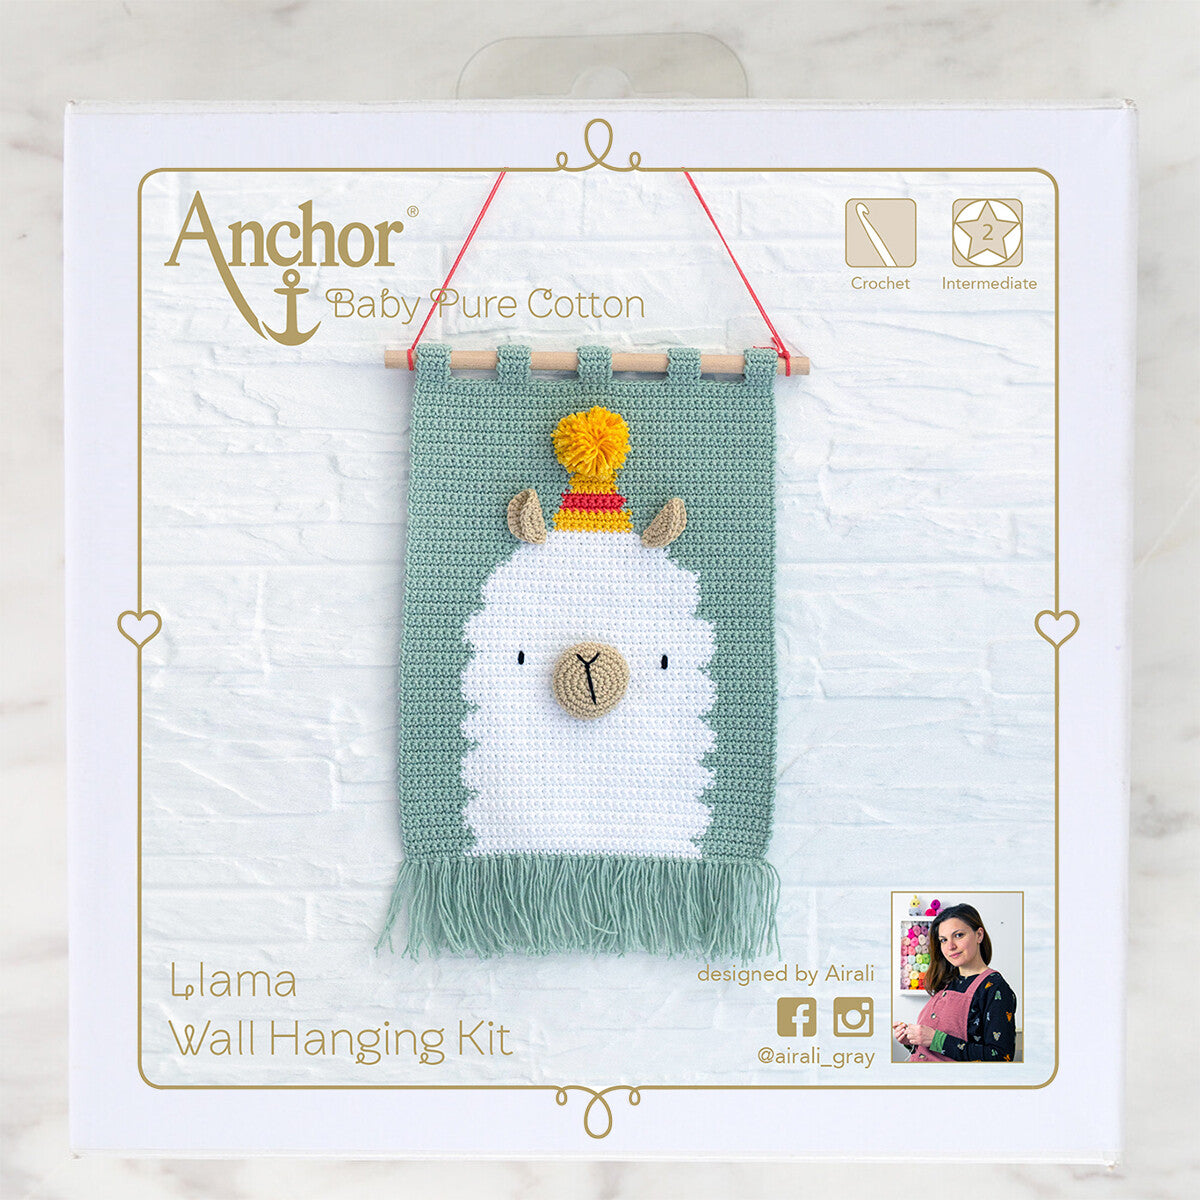 Anchor Lama Wall Hanging Kit - A28B003-09061